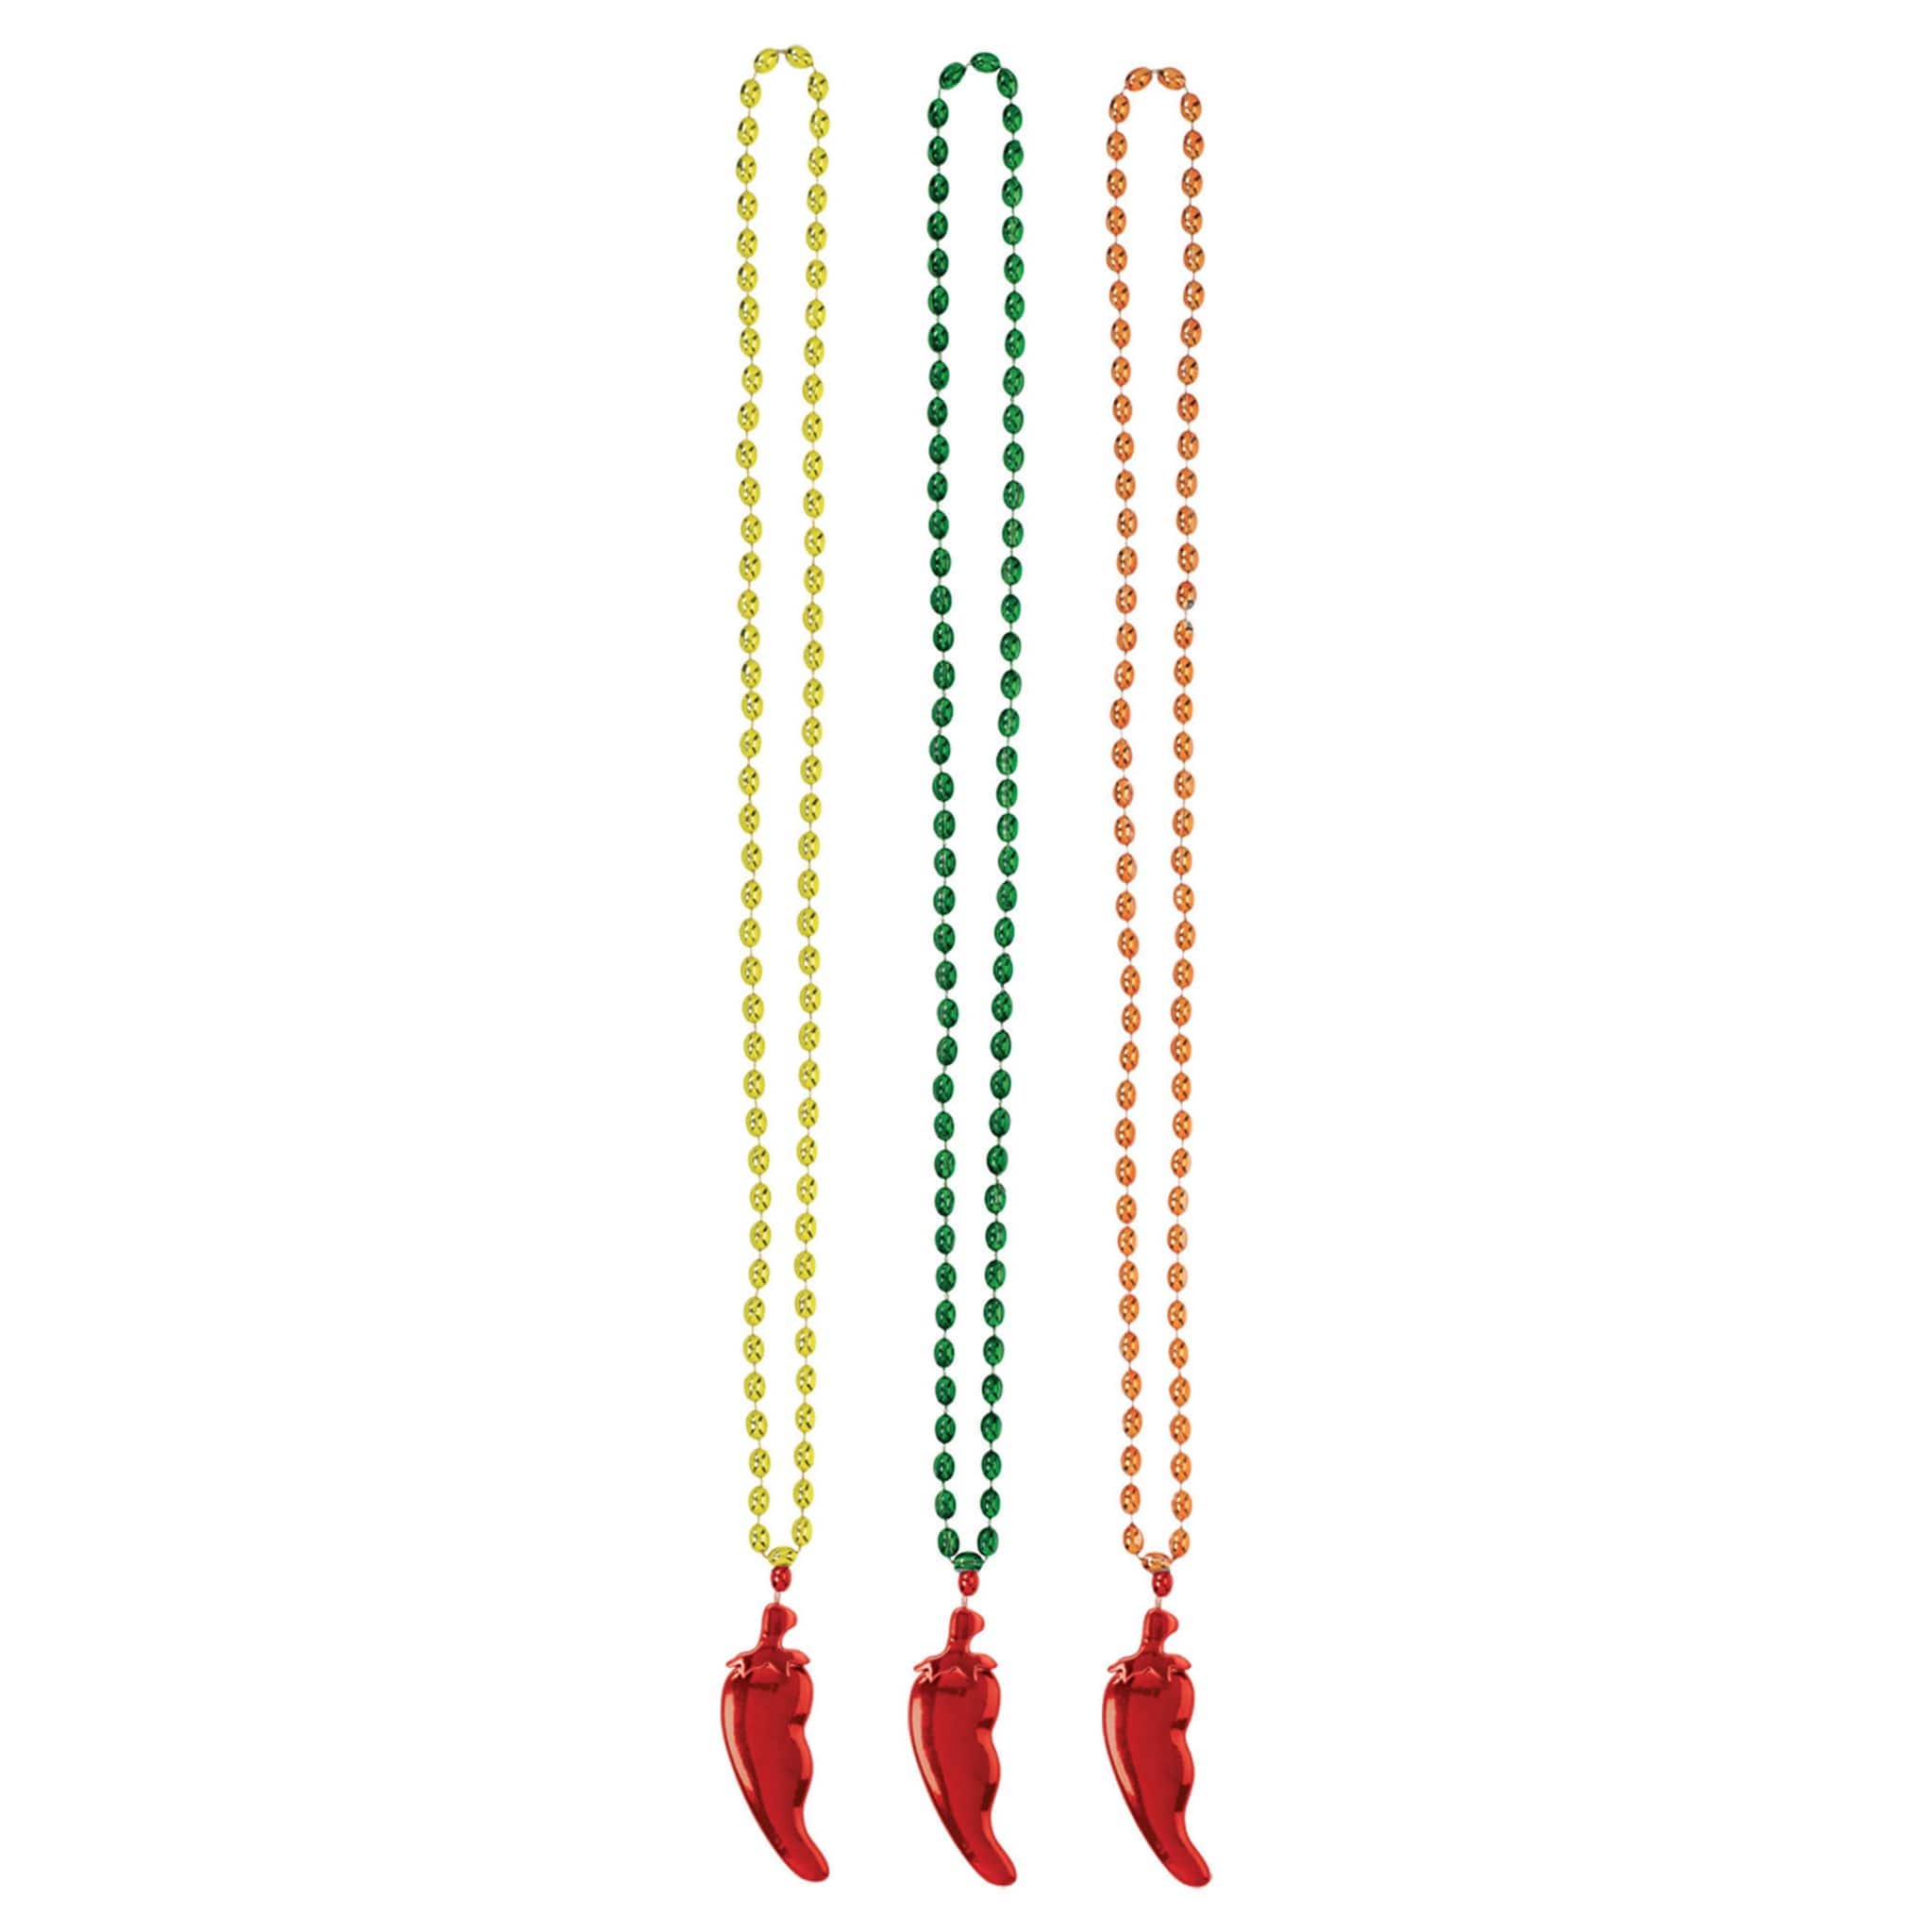 Cinco de Mayo Chili Pepper Pendant Bead Necklace, 18ct.